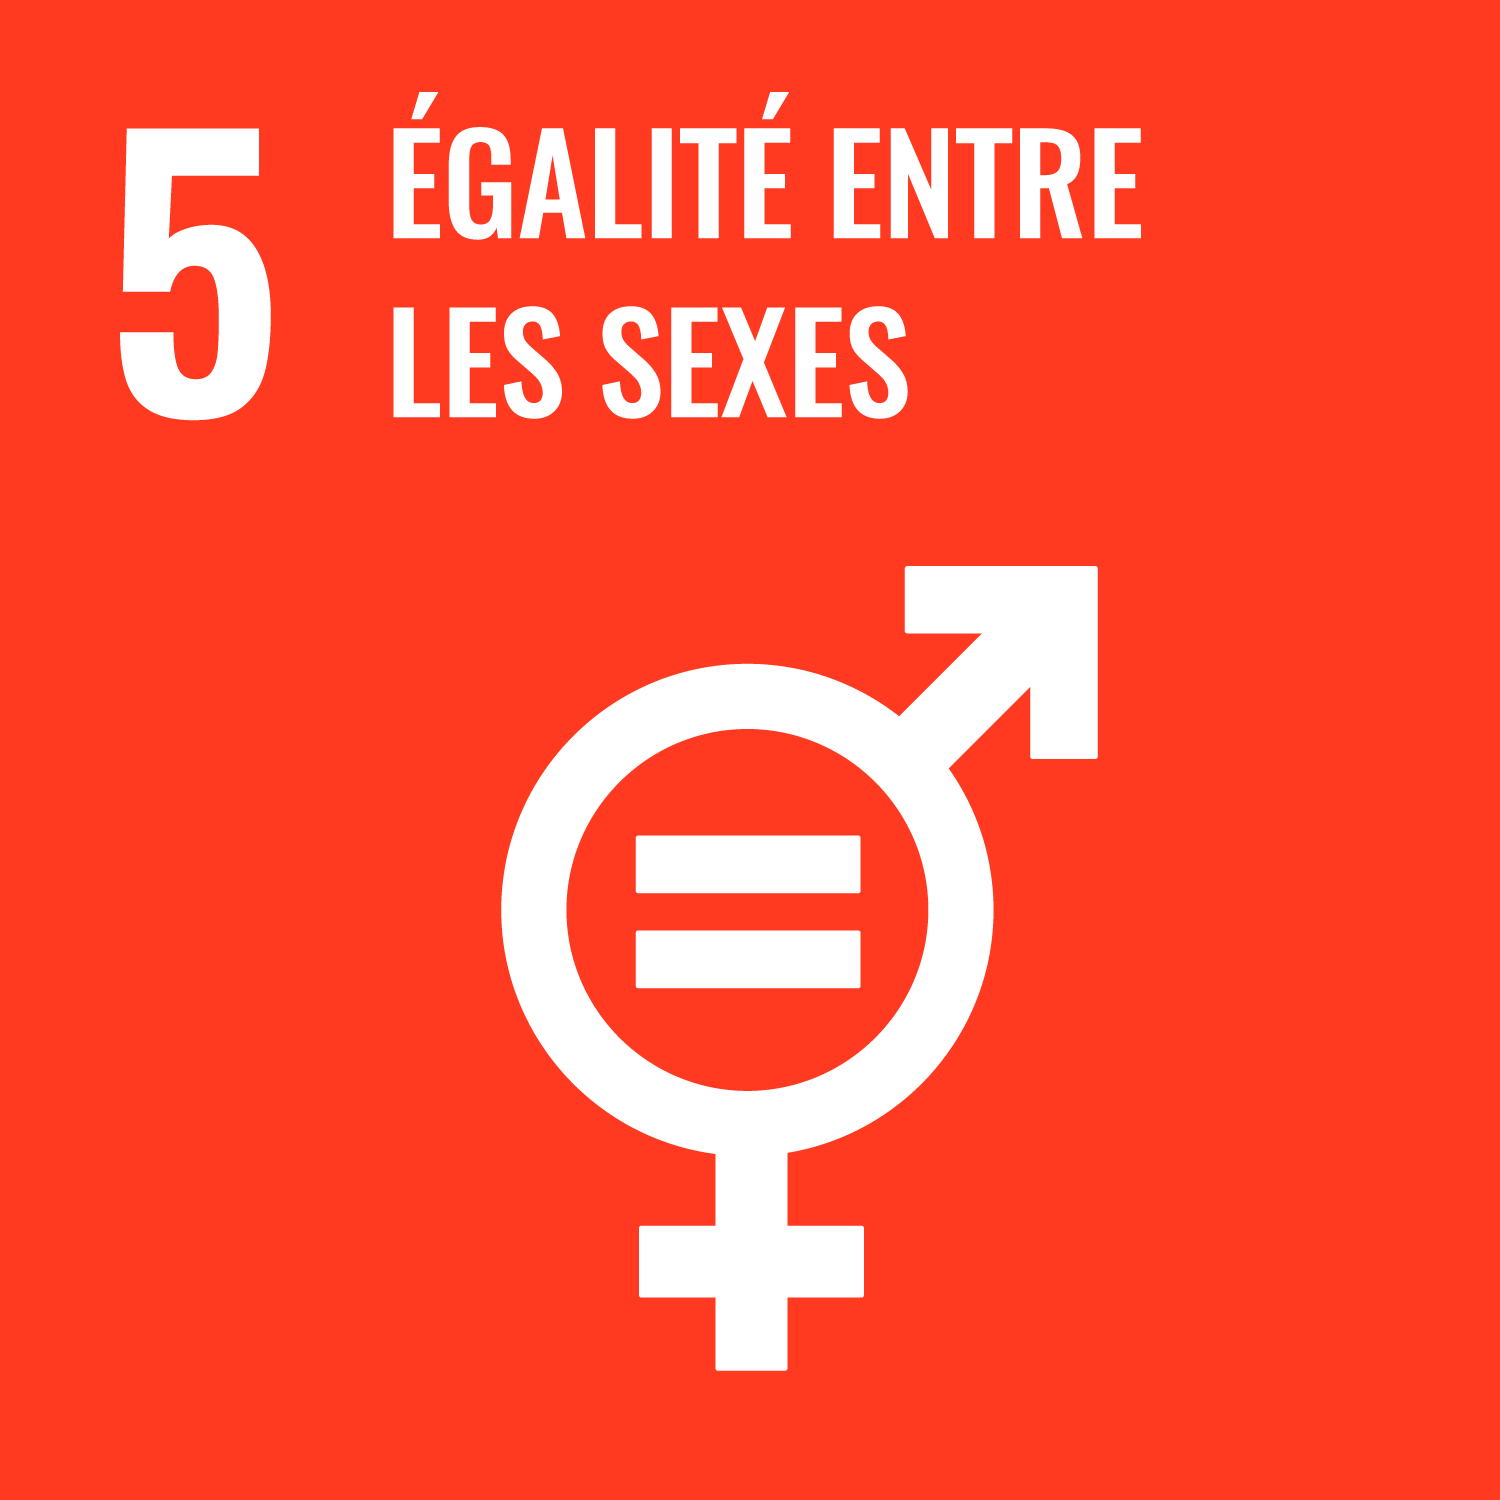 Objectif de développement durable 5 : Egalité entre les sexes;